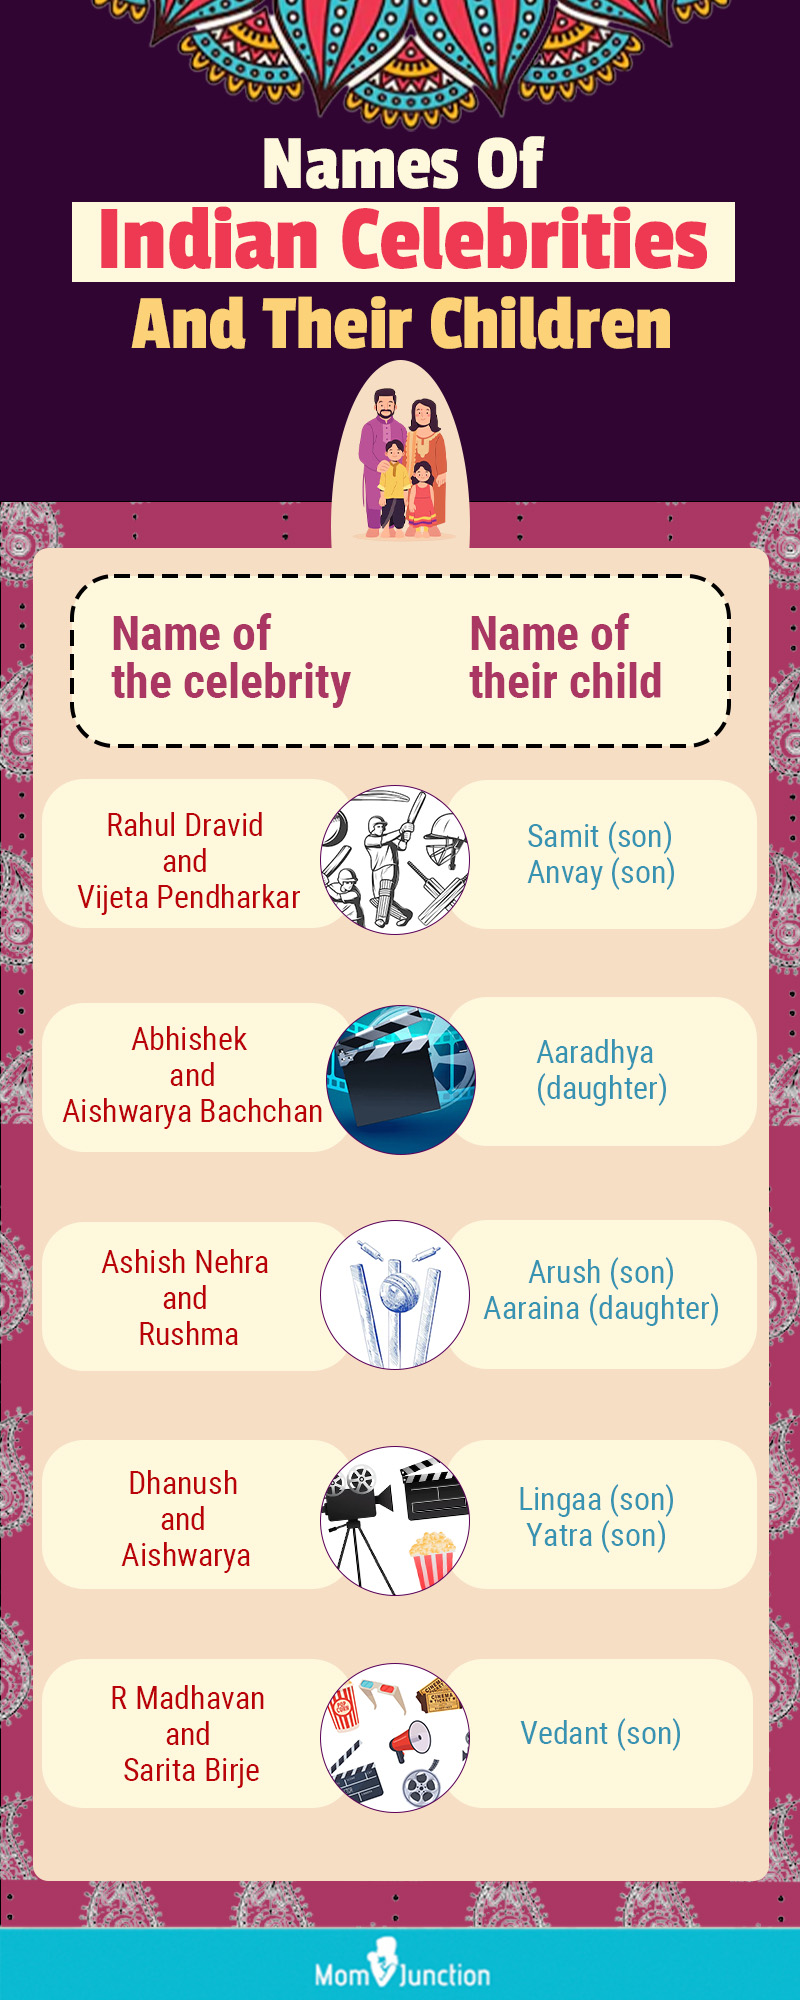 印度名人及其子女姓名(信息图)